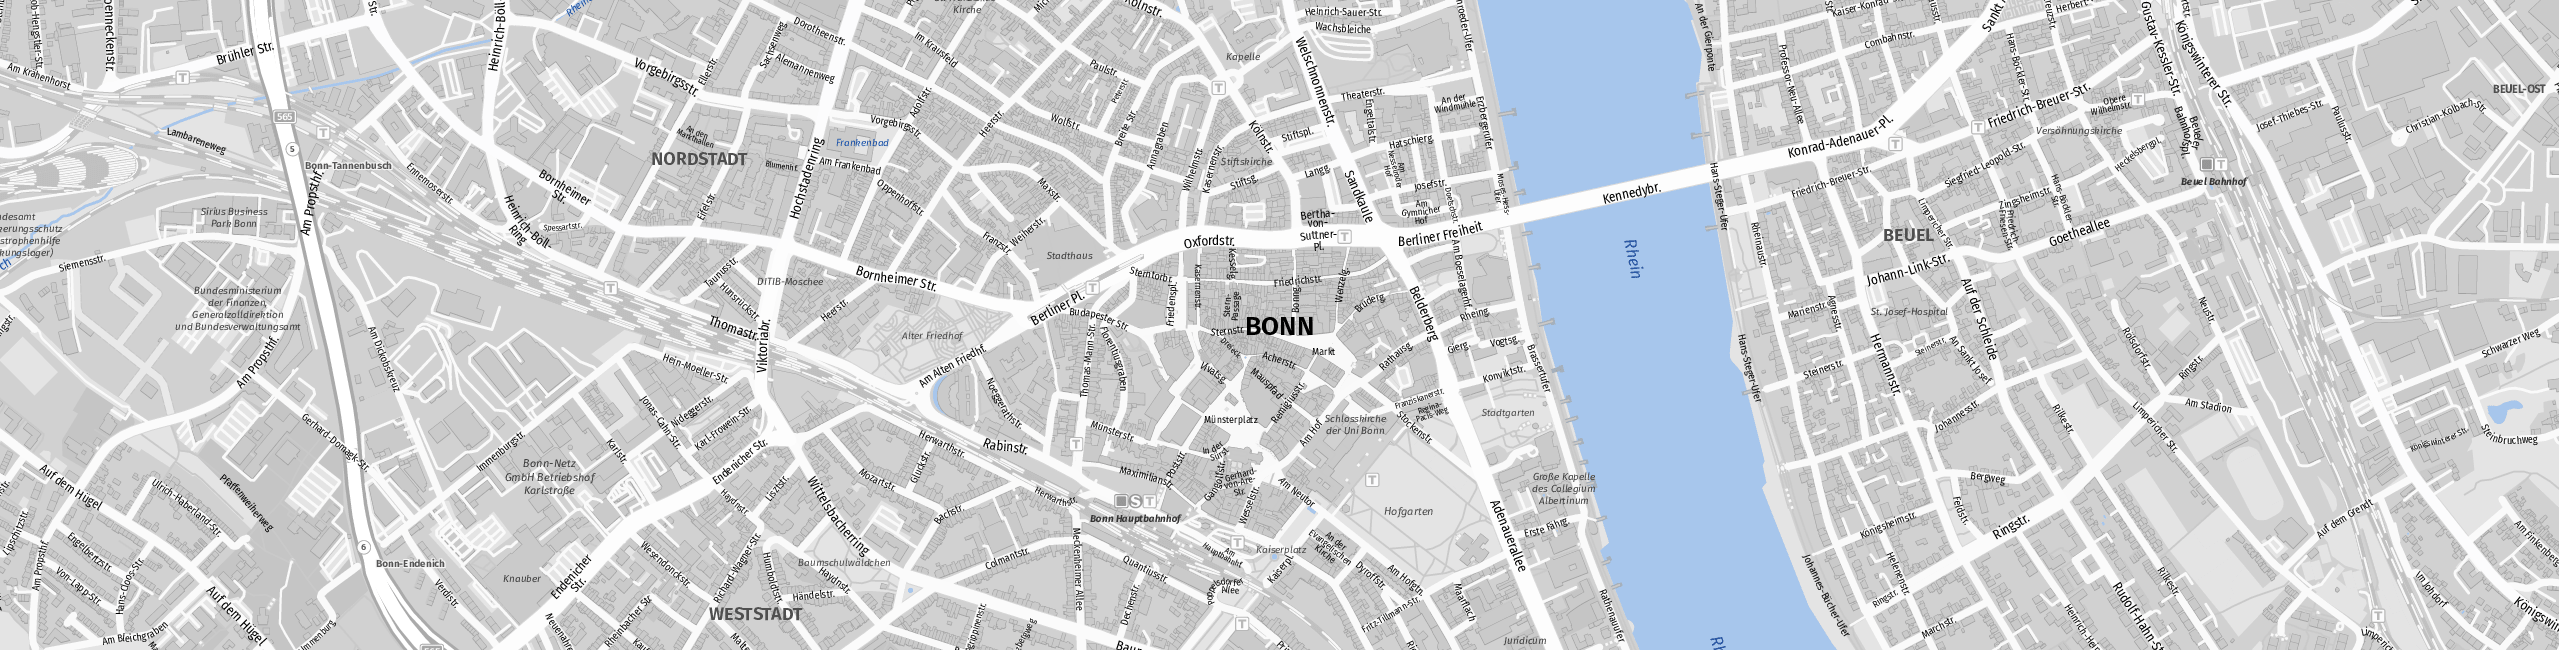 Stadtplan Bonn zum Downloaden.